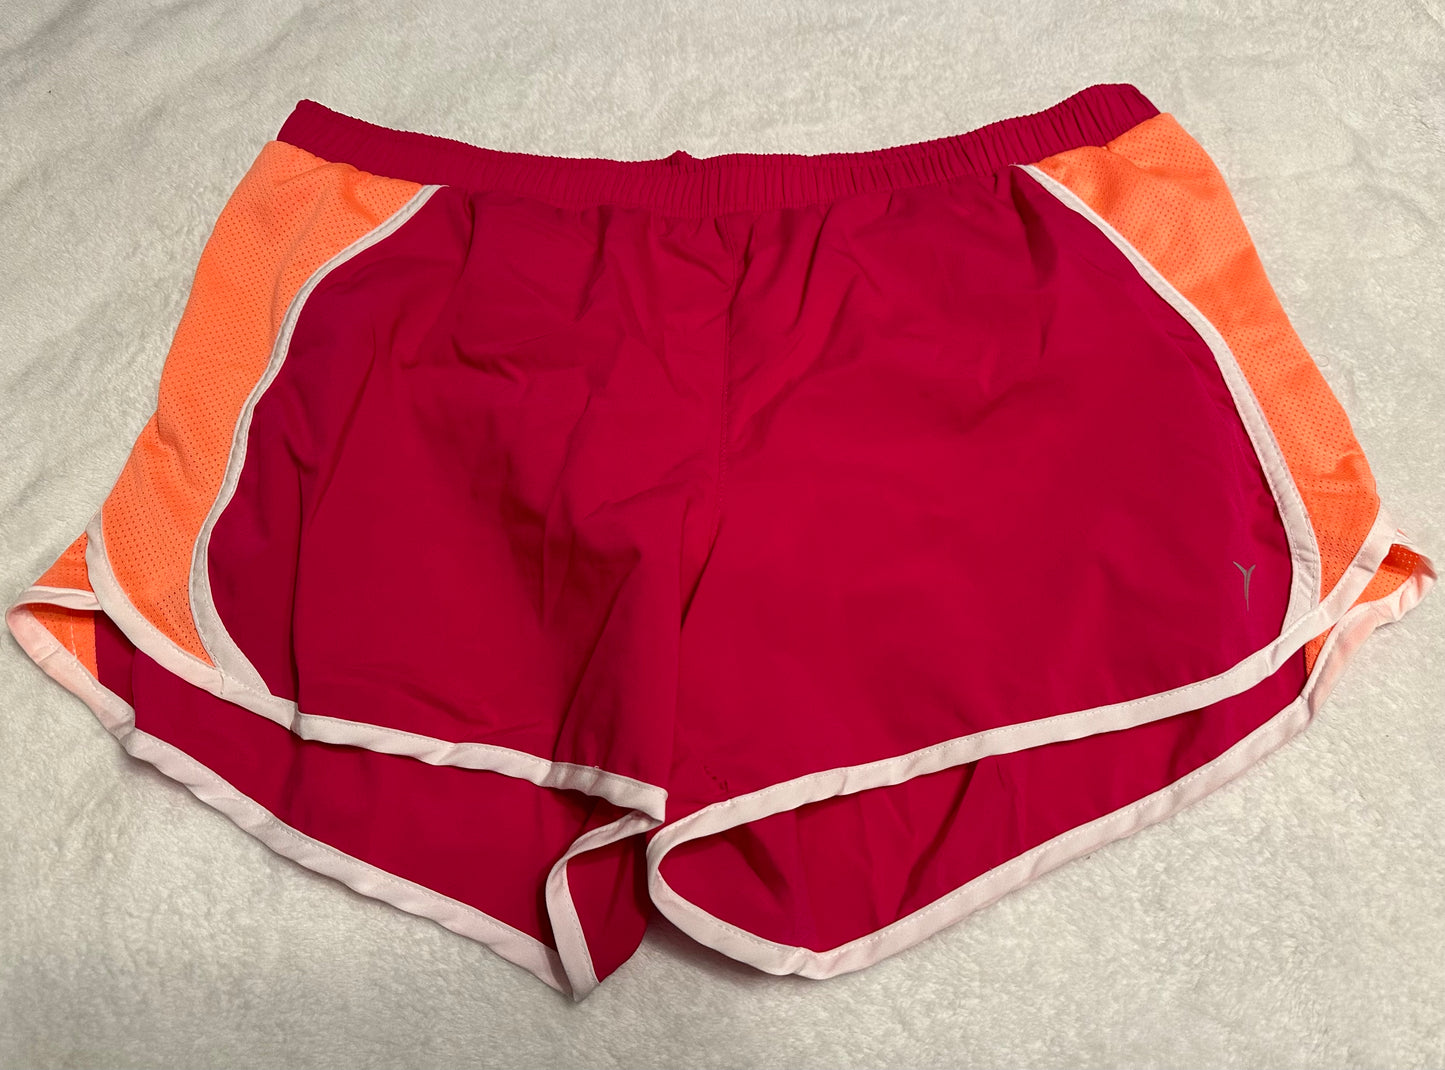 Women’s large Old Navy athletic shorts hot pink / orange